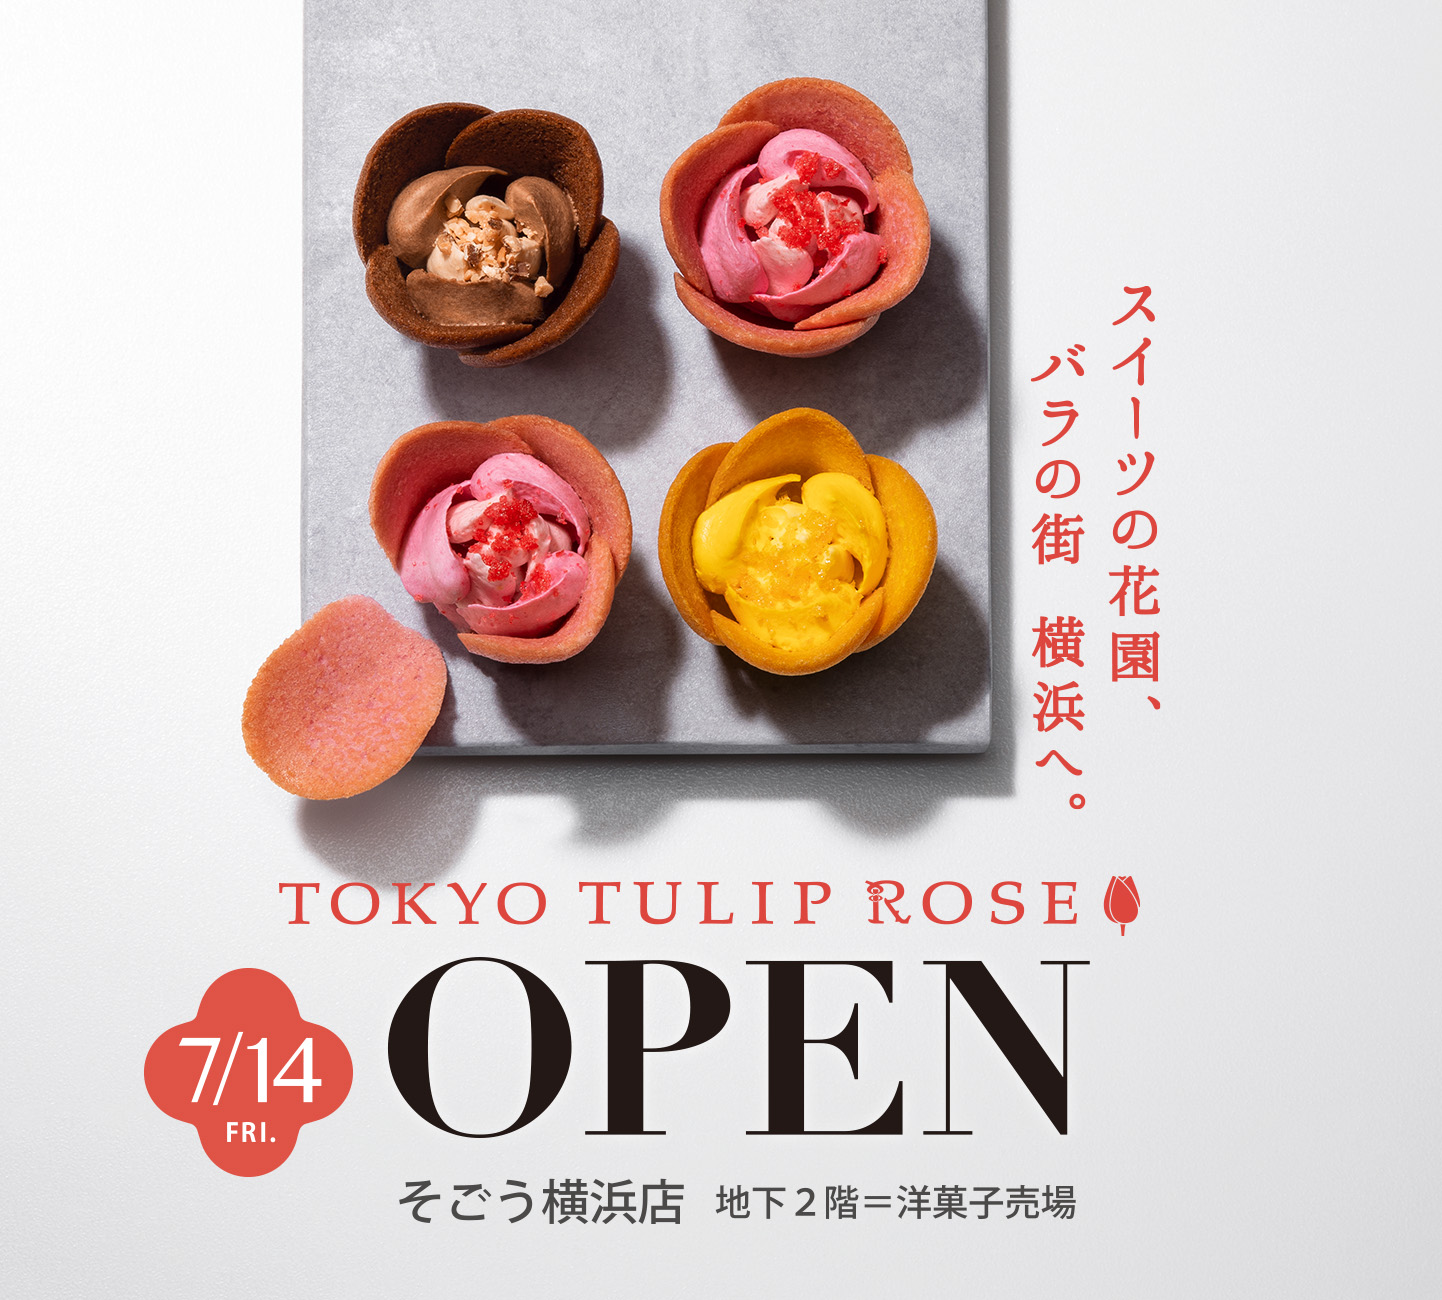 TOKYOチューリップローズ TOKYO TULIP ROSE ６個入  ラングドシャ  お土産  ギフト  贈り物  プレゼント  洋菓子